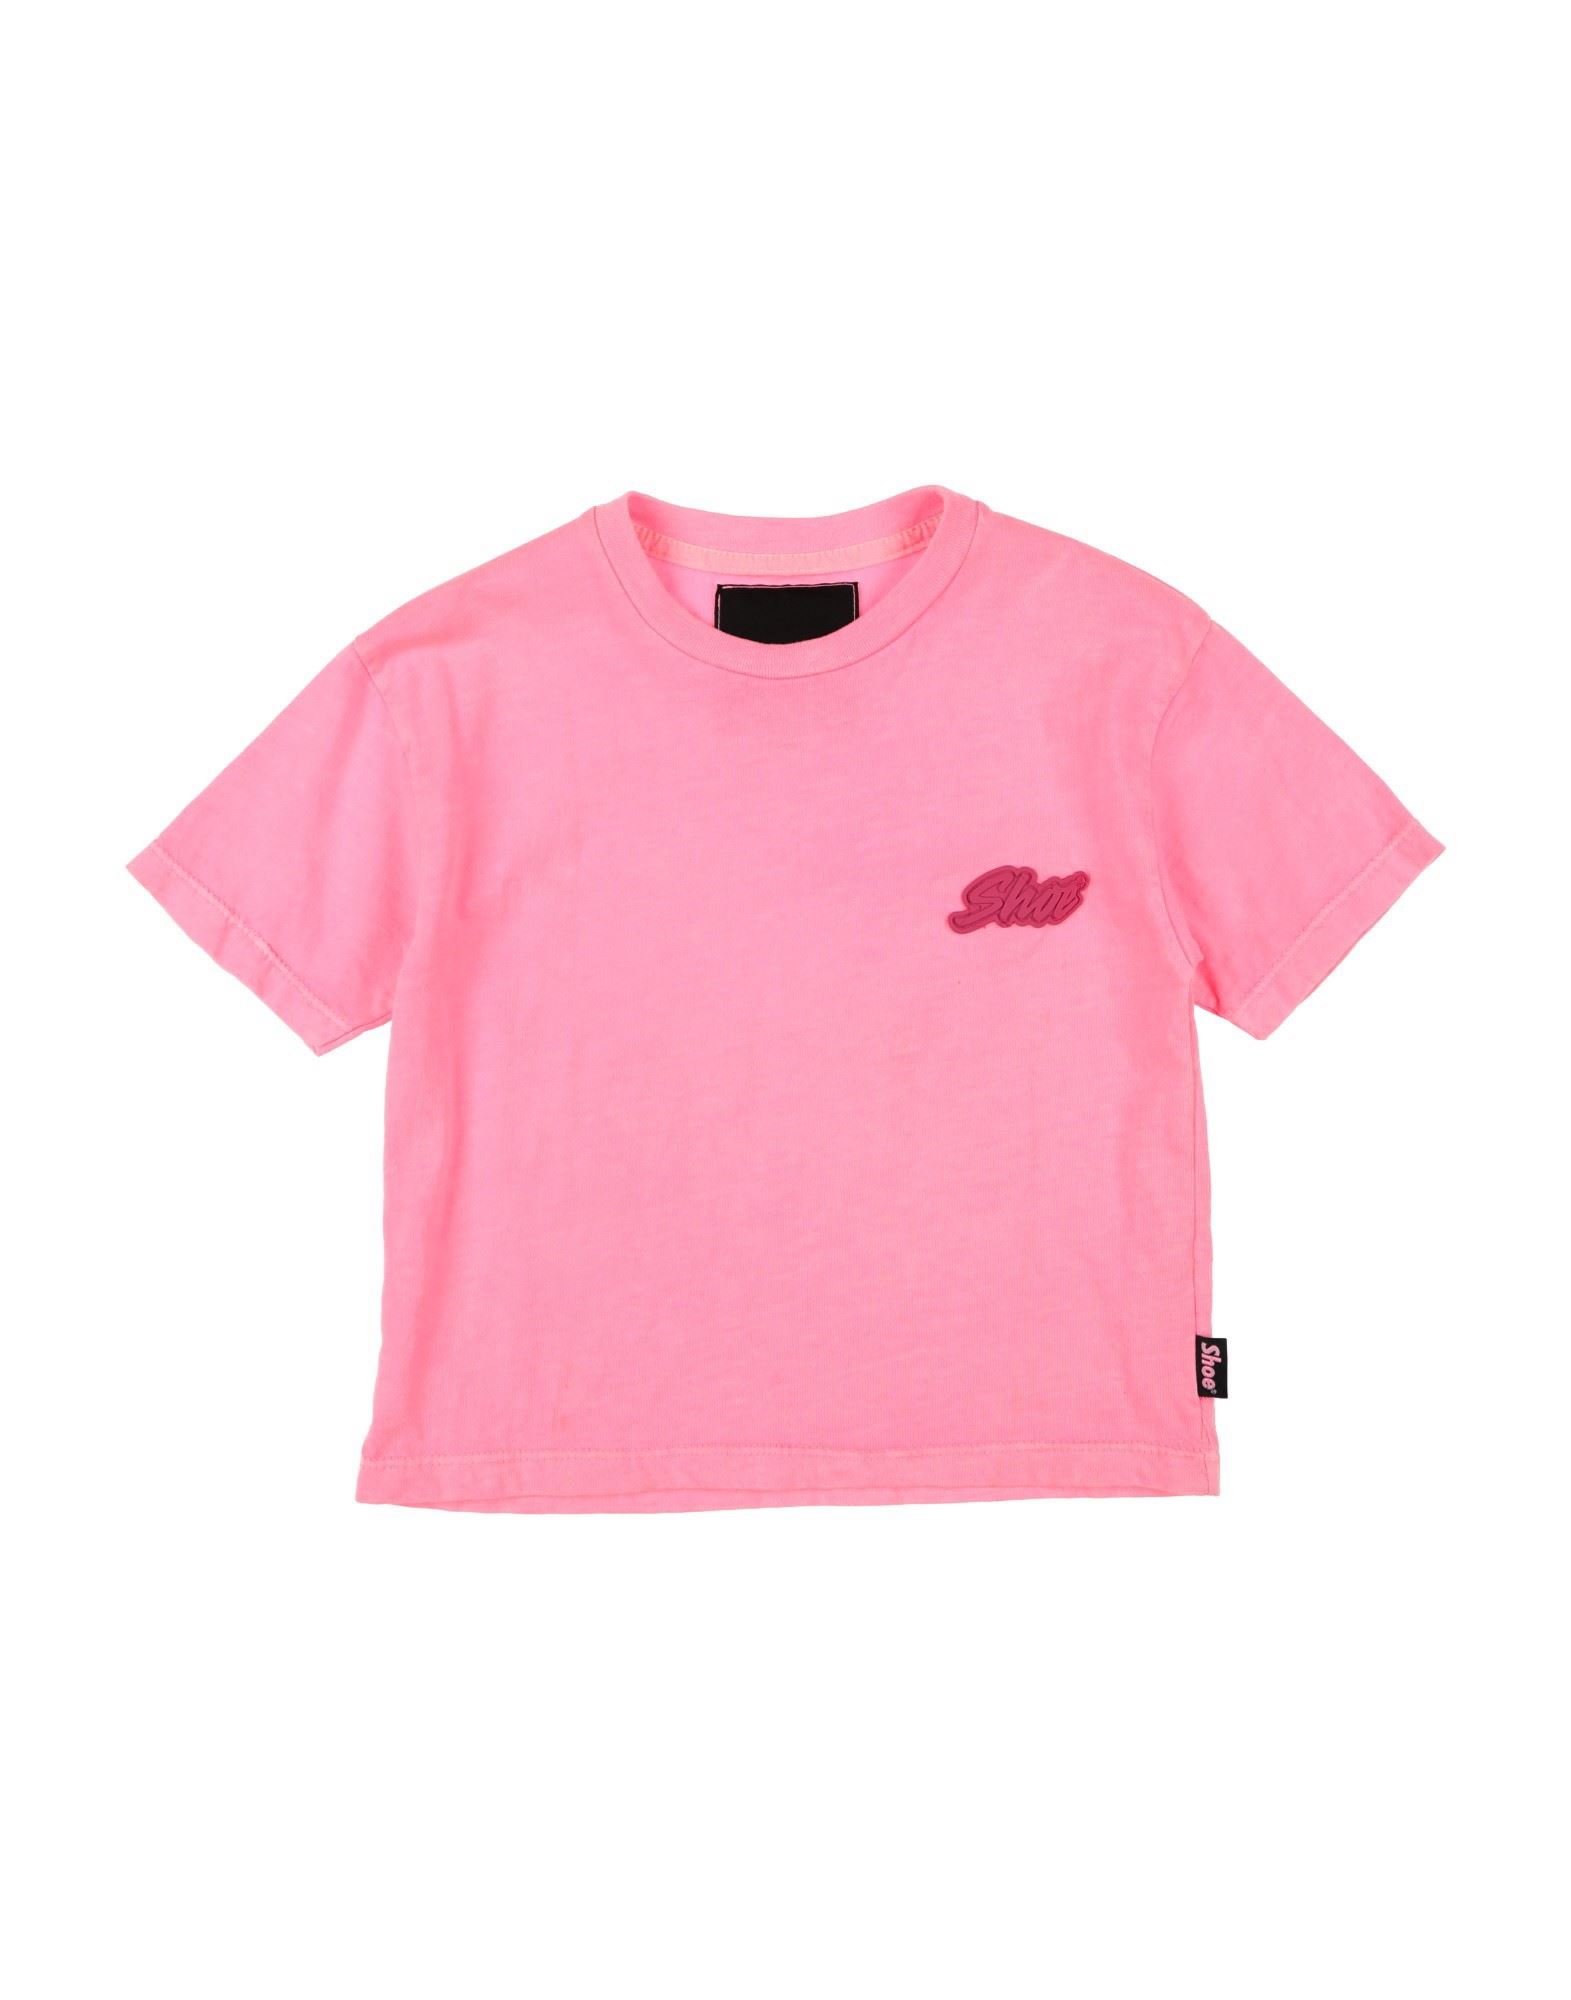 Shoe® Kids' Shoe Toddler Girl T-shirt Fuchsia Size 4 Cotton In Pink